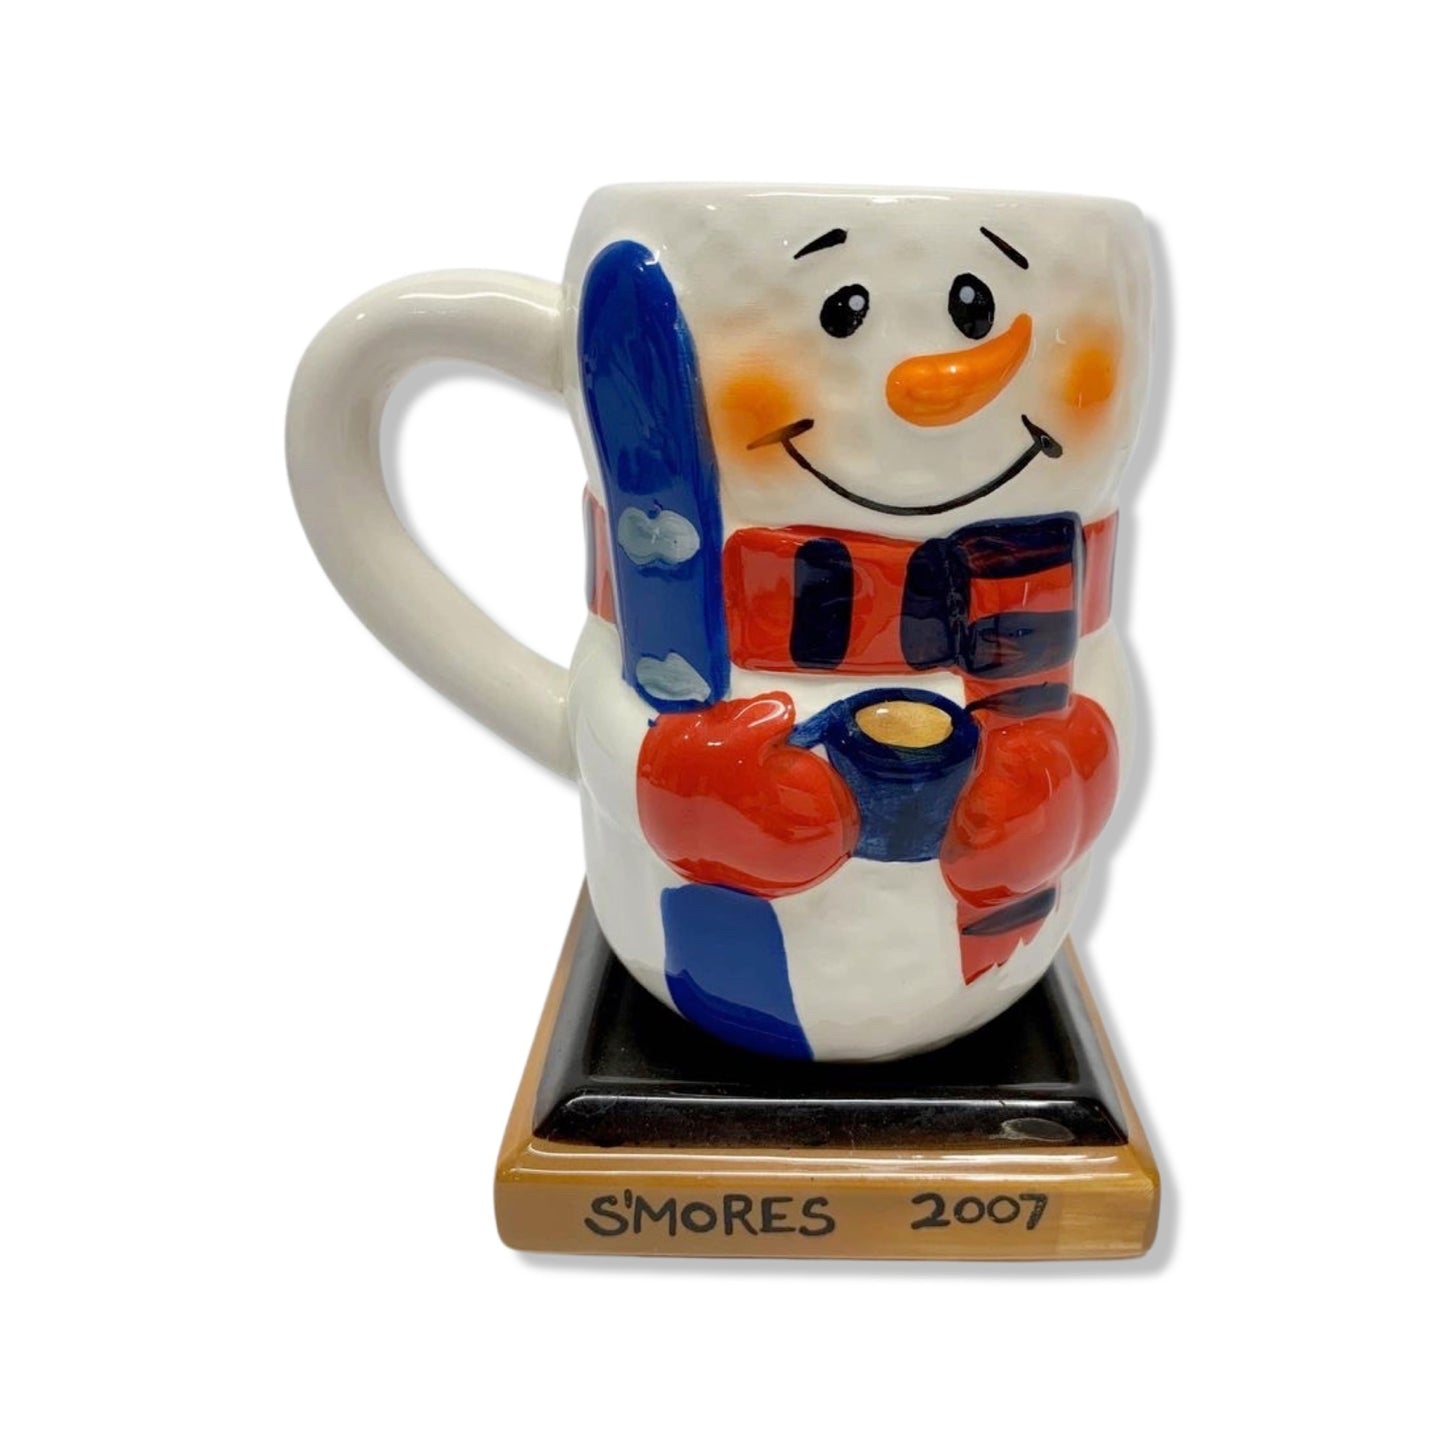 2007 S’mores Coffee Hot Chocolate Mug Ceramic